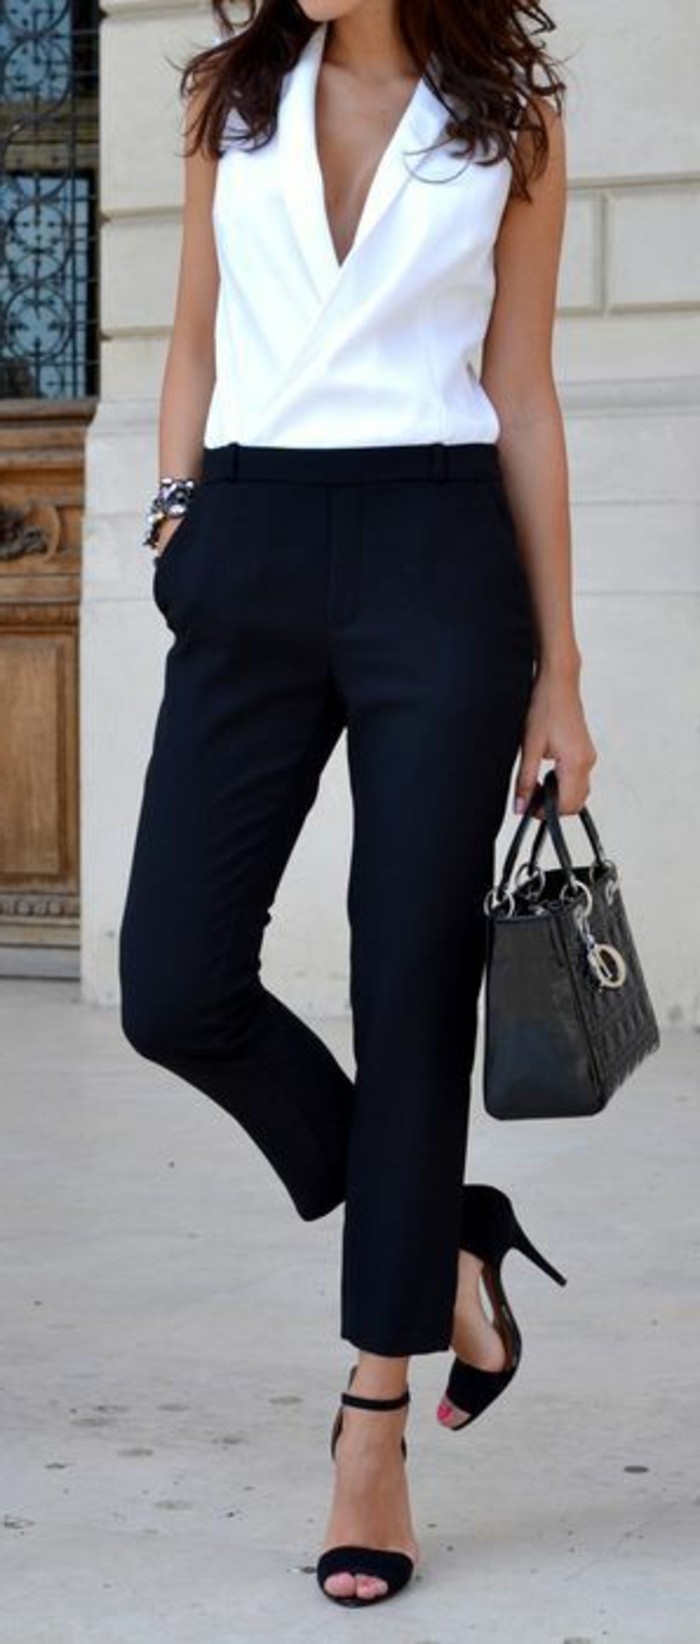 business-kleider-elegante-weise-bluse-moderne-schwarze-hose-schwarze-tasche-hohe-schwarze-schuhe